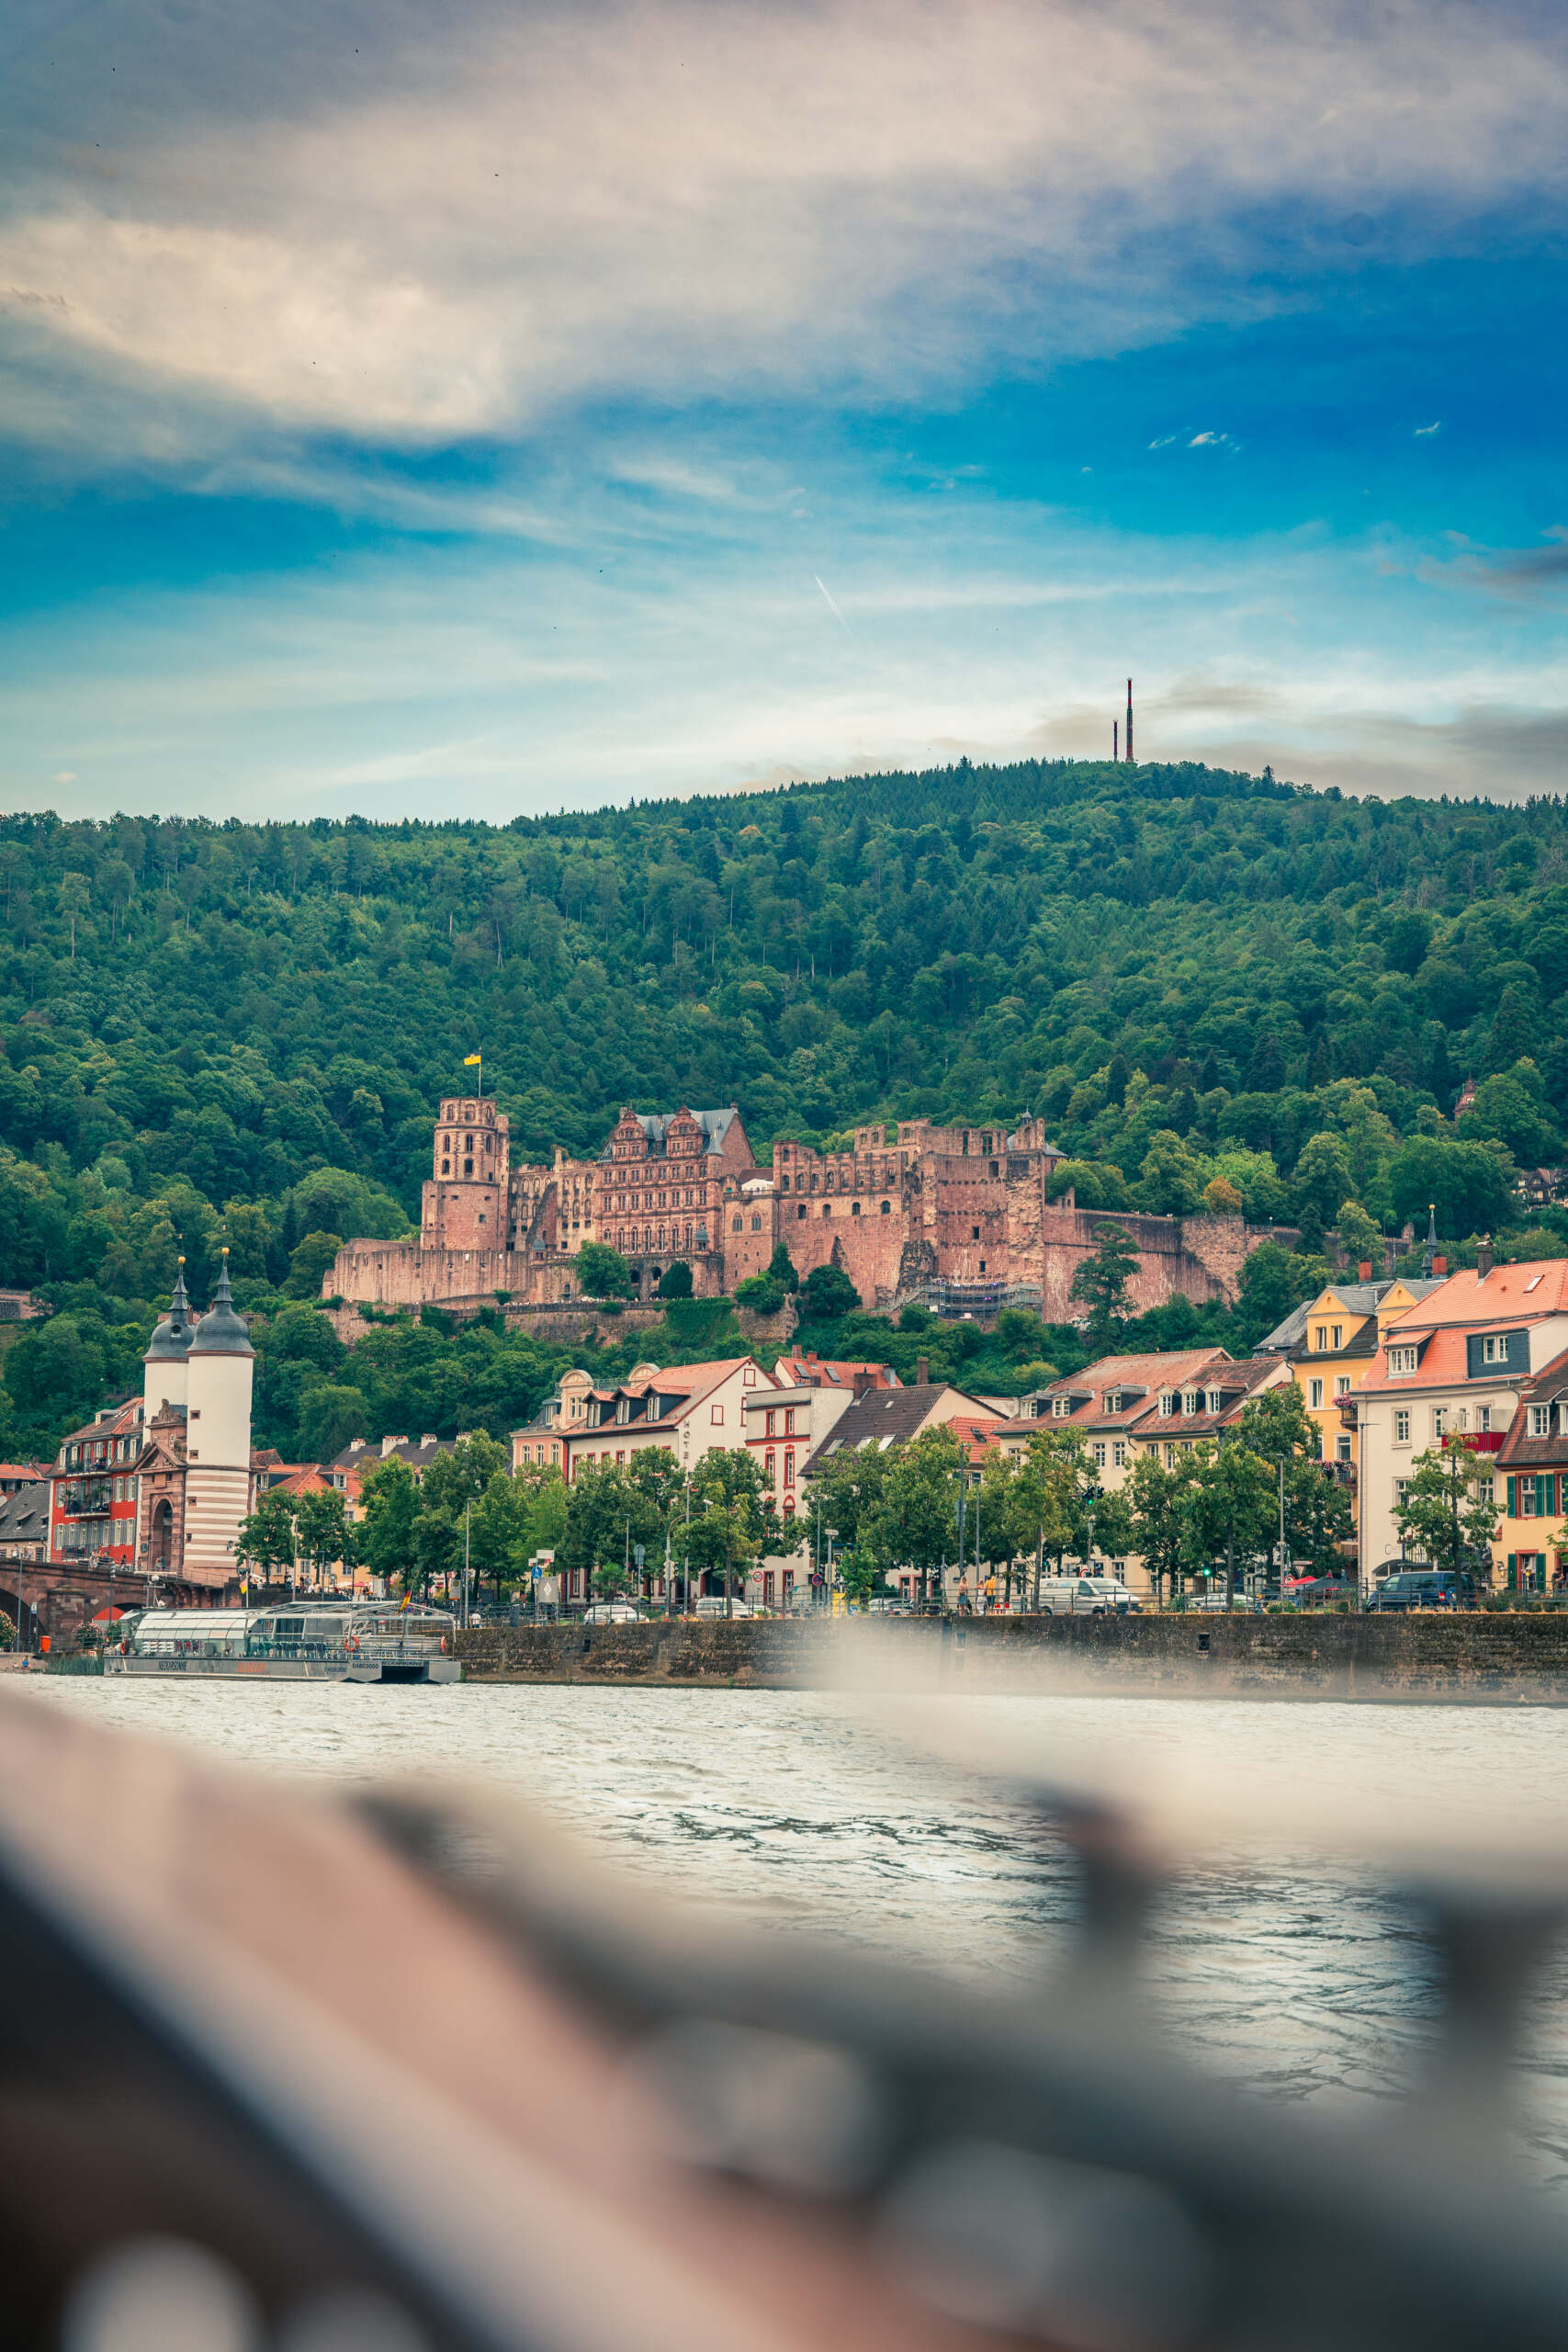 Heidelberg im Frühling vom Wasser aus gesehen